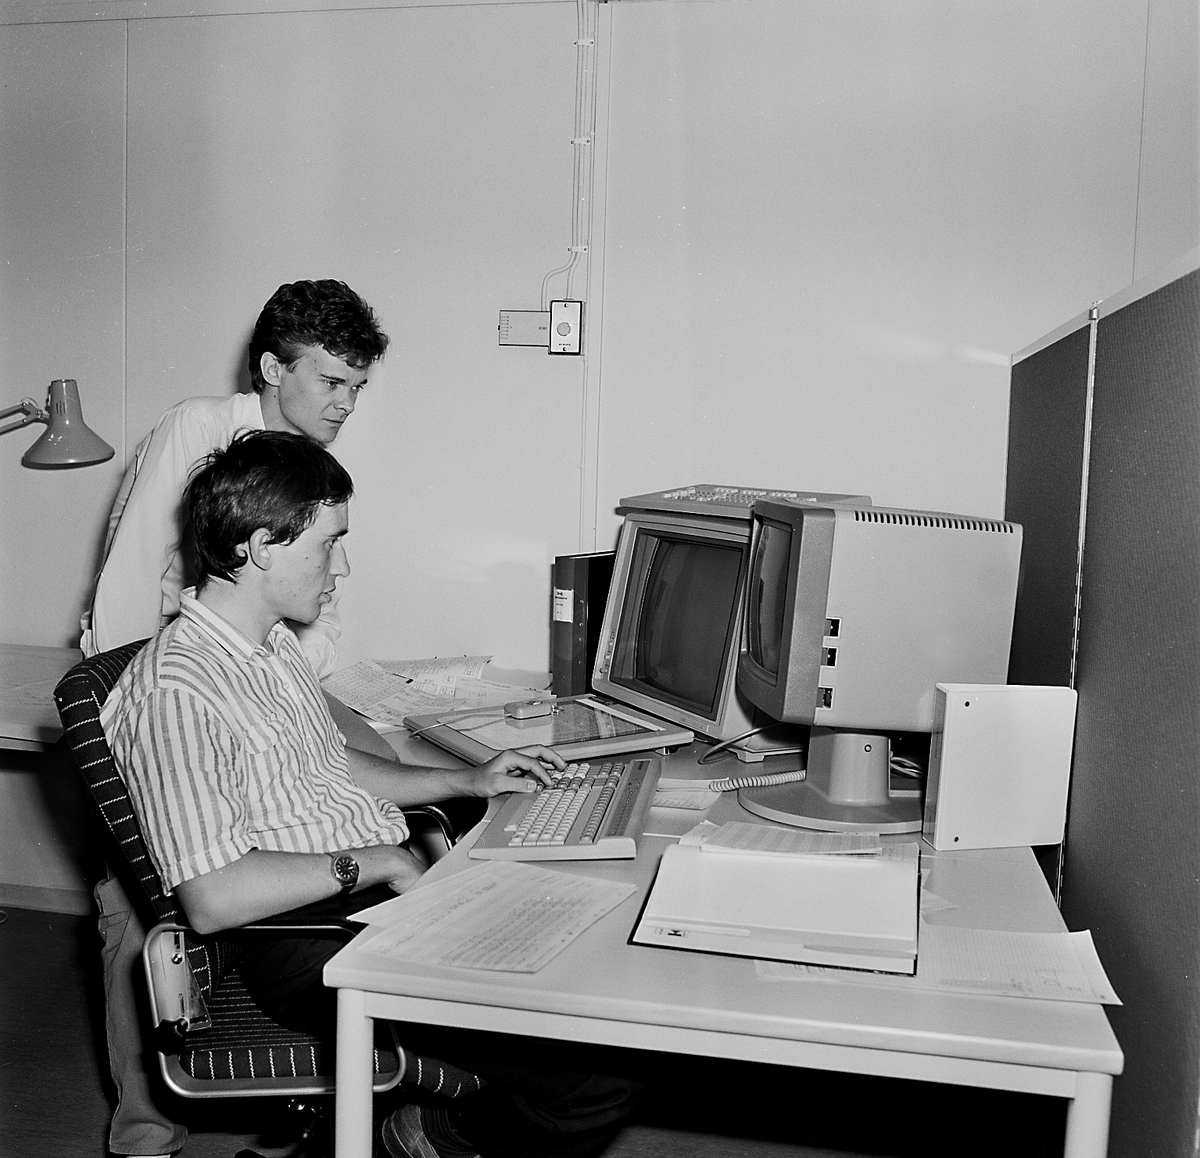 Varvet runt - en bildutställning.
Konstruktionsarbetet har sedan 1980-talet förändrats radikalt. Ritplankorna har försvunnit och ersatts av avancerade datorer. Lennart Isaksson (närmast) och Hans Svensson på Fartygsritkontoret.